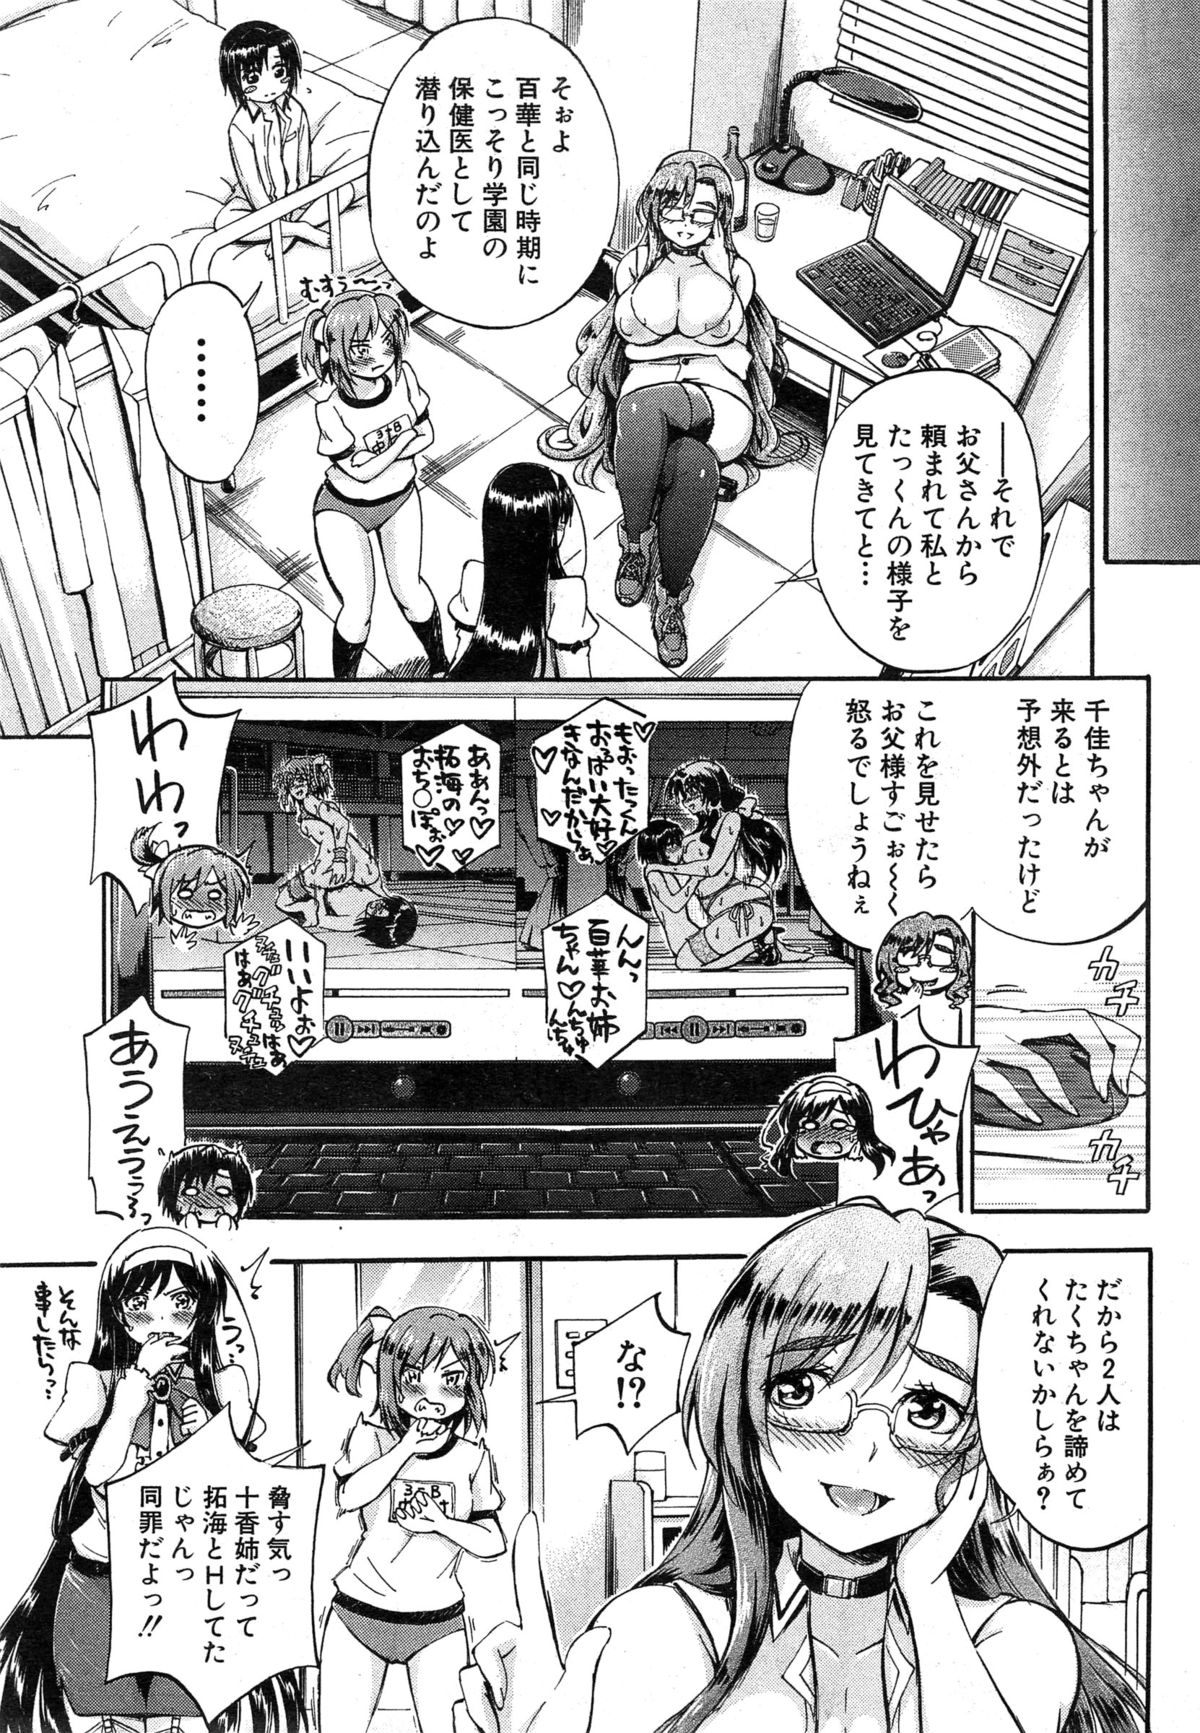 [Maekawa Hayato] SSS Ch.1-3 page 109 full